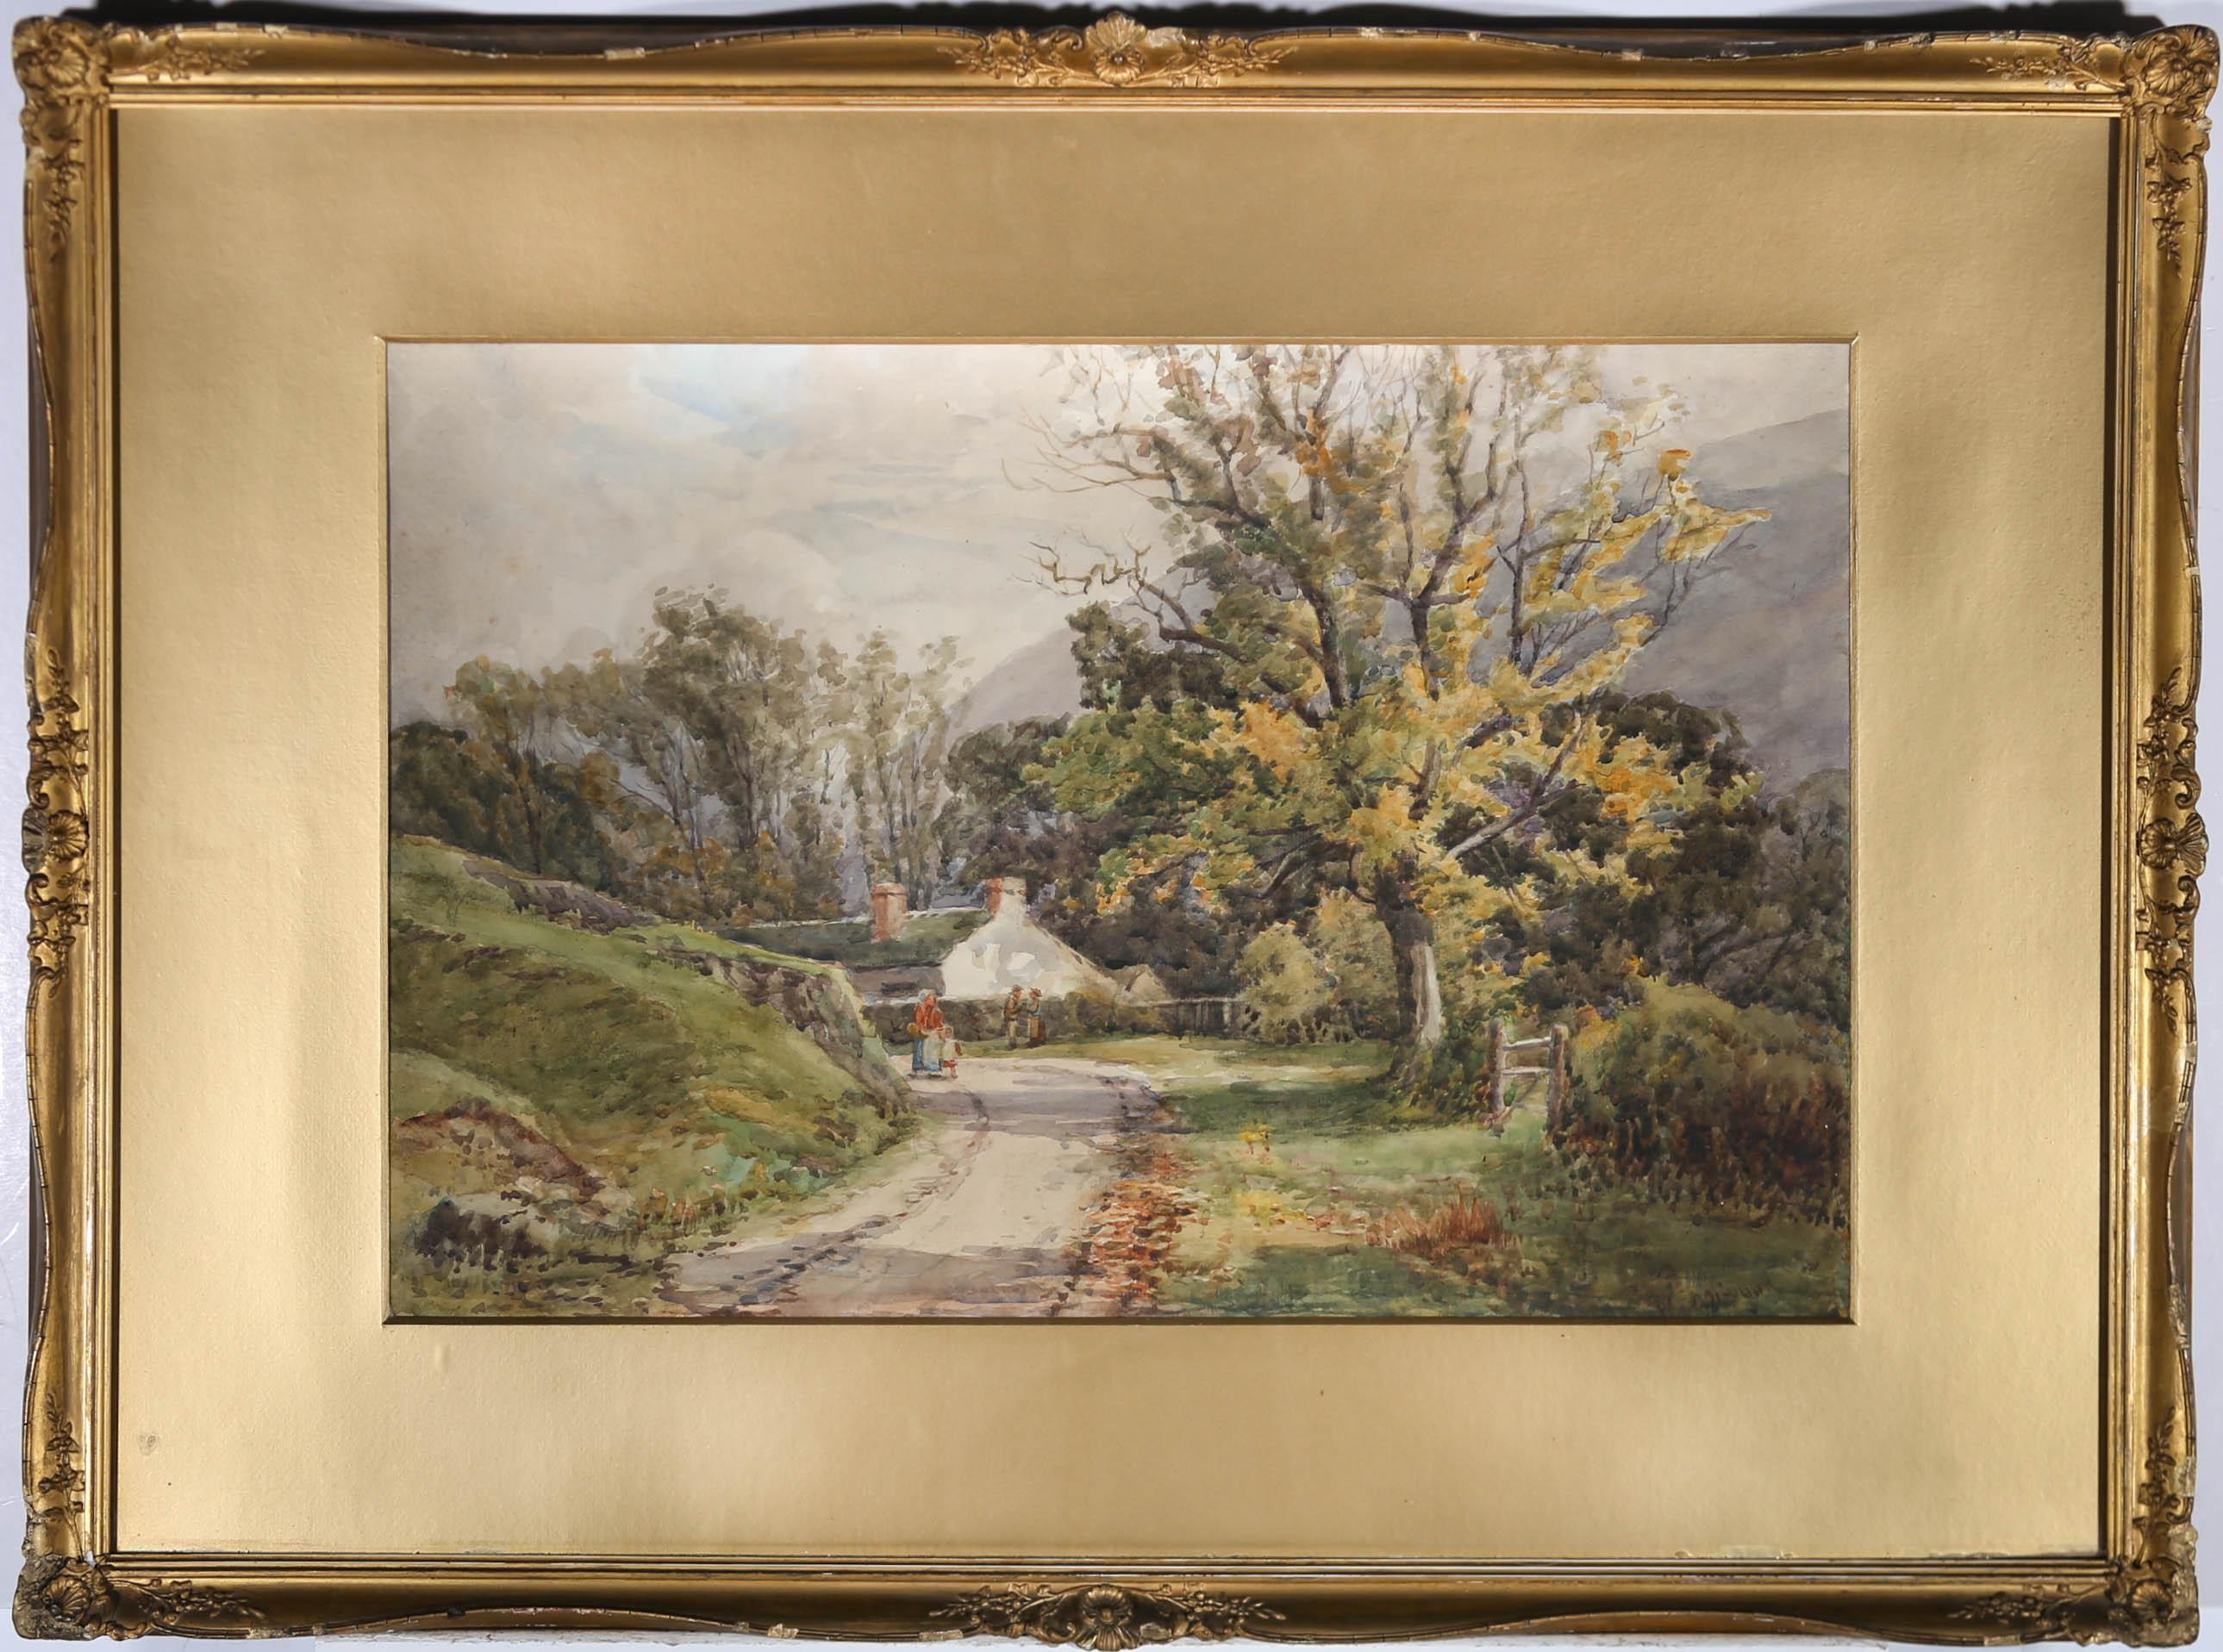 Eine sanft gemalte impressionistische Landschaft von Walter Eastwood, die eine gewundene Landstraße in Richtung des Dorfes Buttermere in Cumbria zeigt. Undeutliche Signatur des Künstlers in der rechten unteren Ecke. Verso mit einem signierten Label